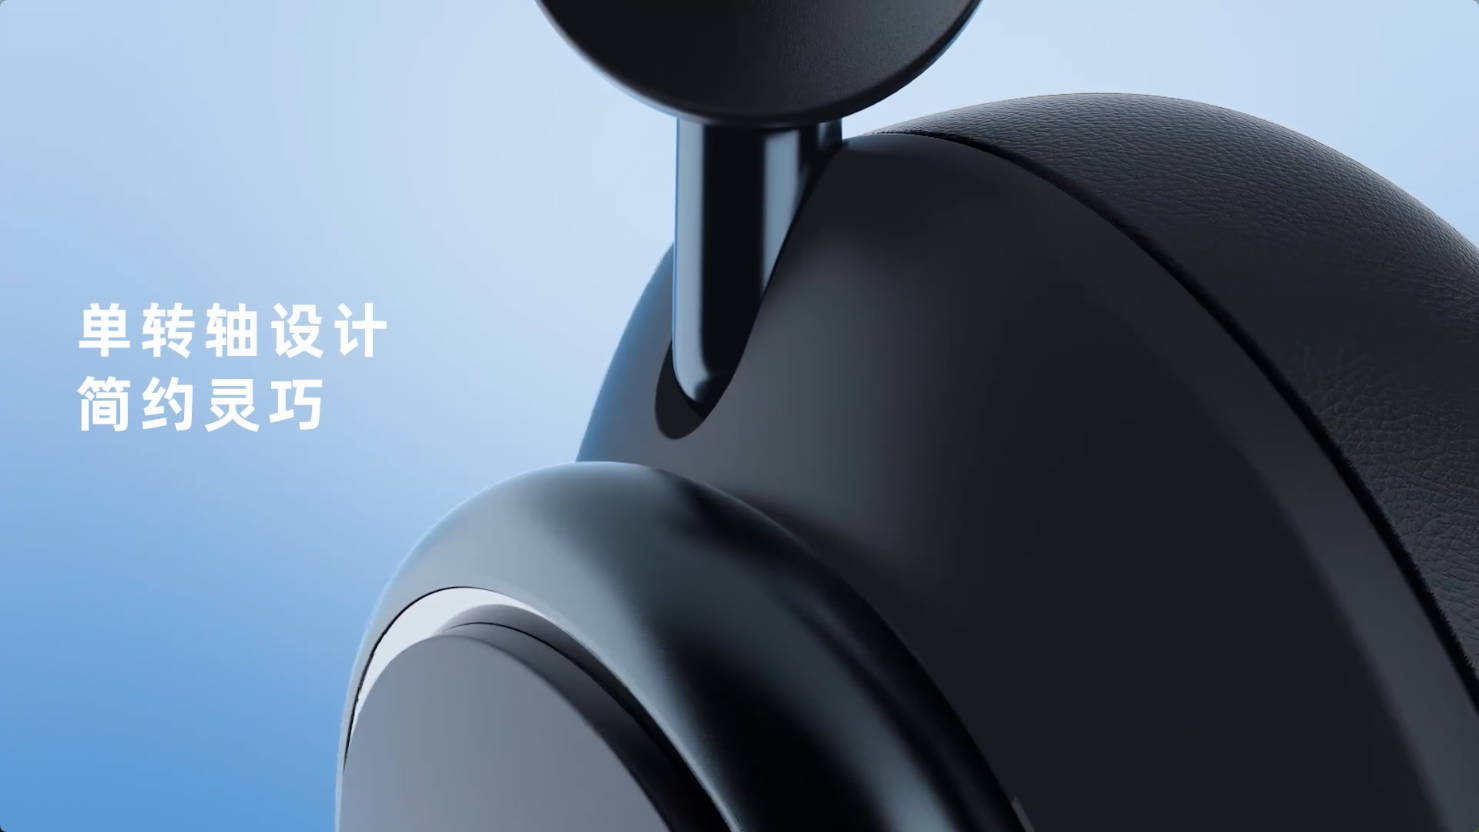 声阔发布新款头戴式降噪耳机Q45，创新采用车载级“双声坛”声学架构，提供极致原声体验-我爱音频网